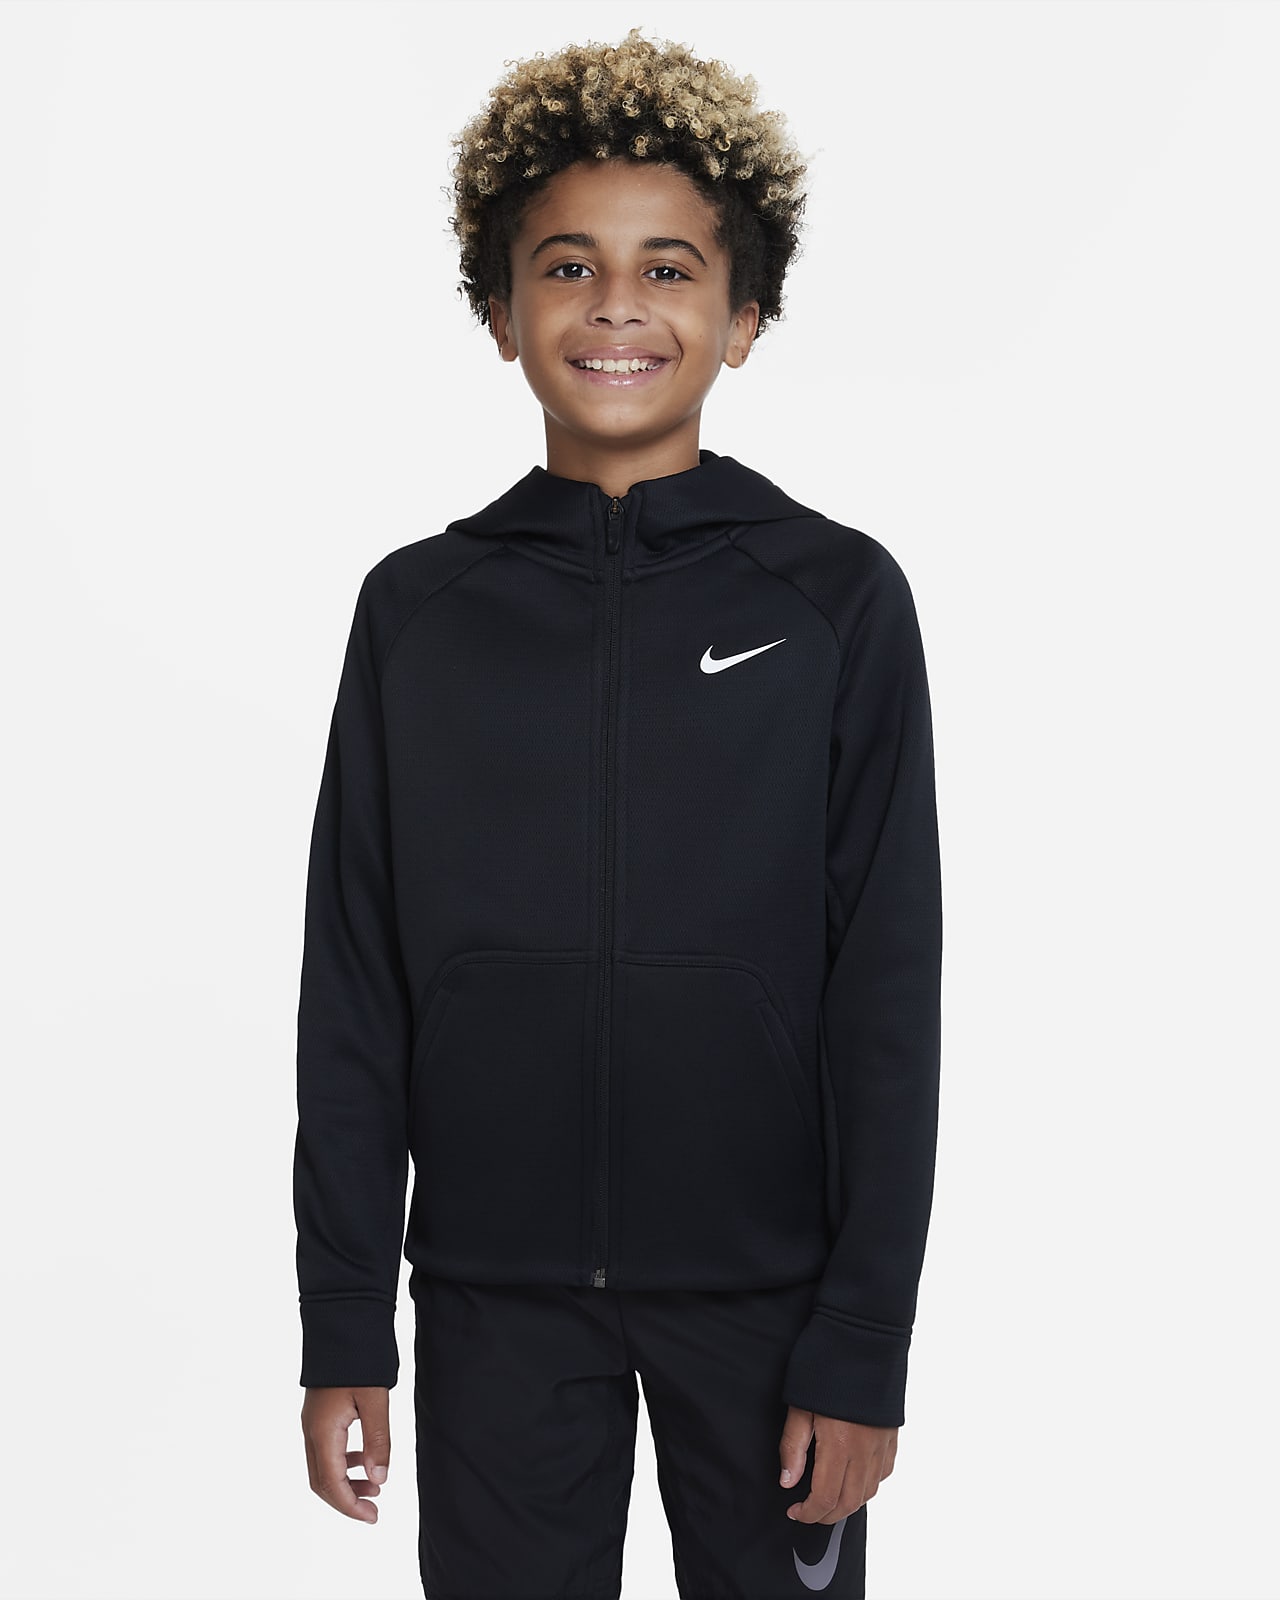 Winterized Nike Therma-FIT-hættetrøje til større børn (drenge)